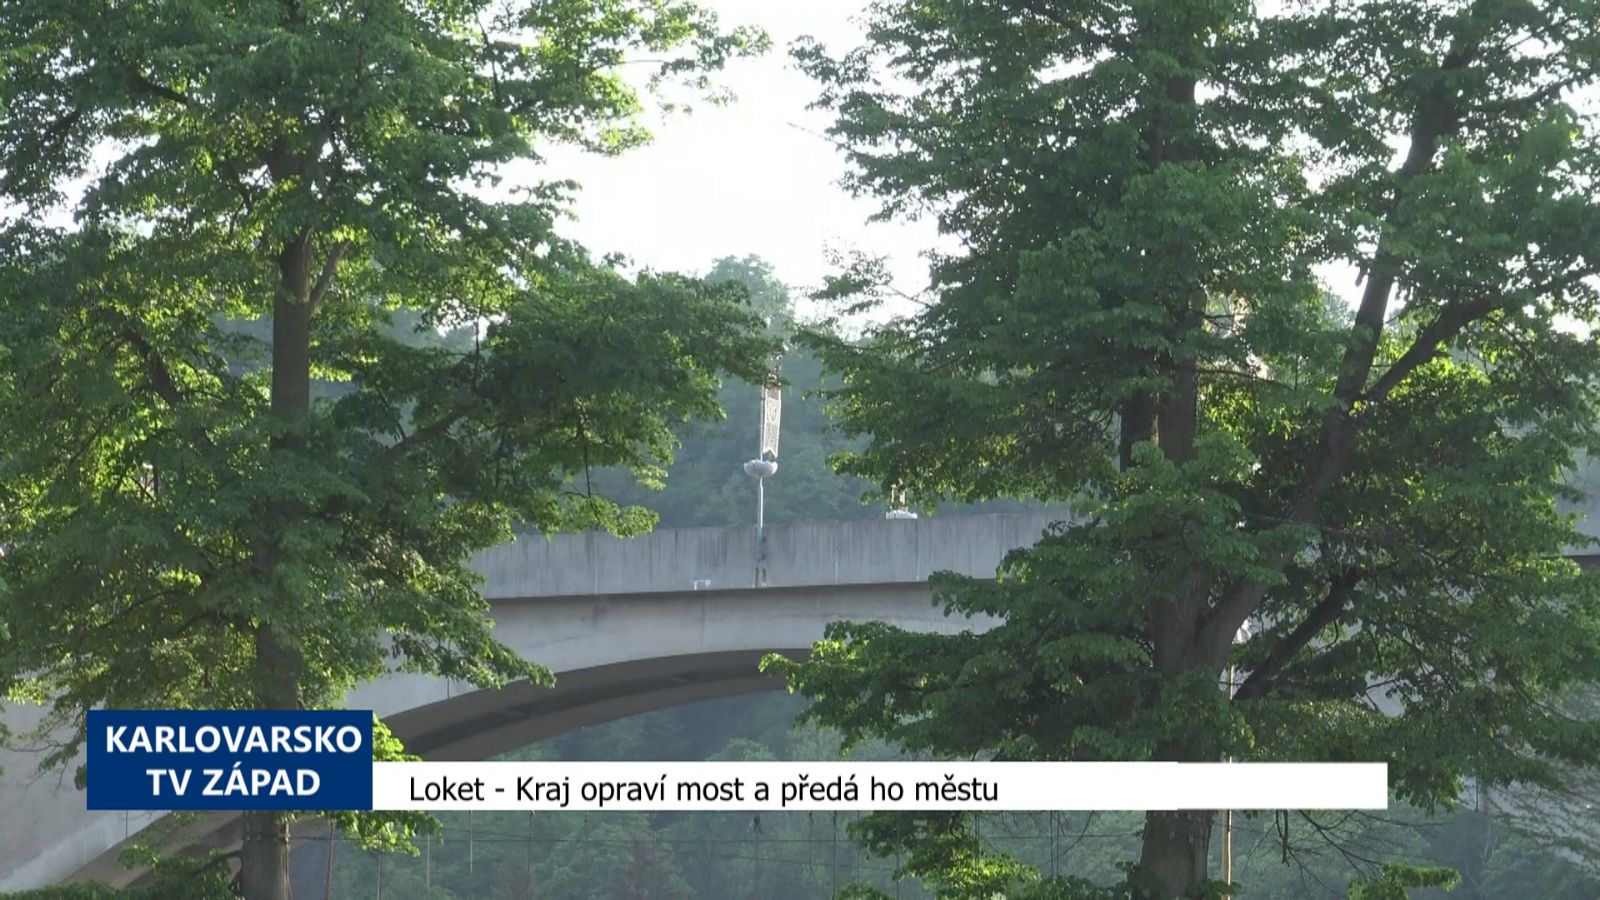 Loket: Kraj opraví most a předá ho městu (TV Západ)